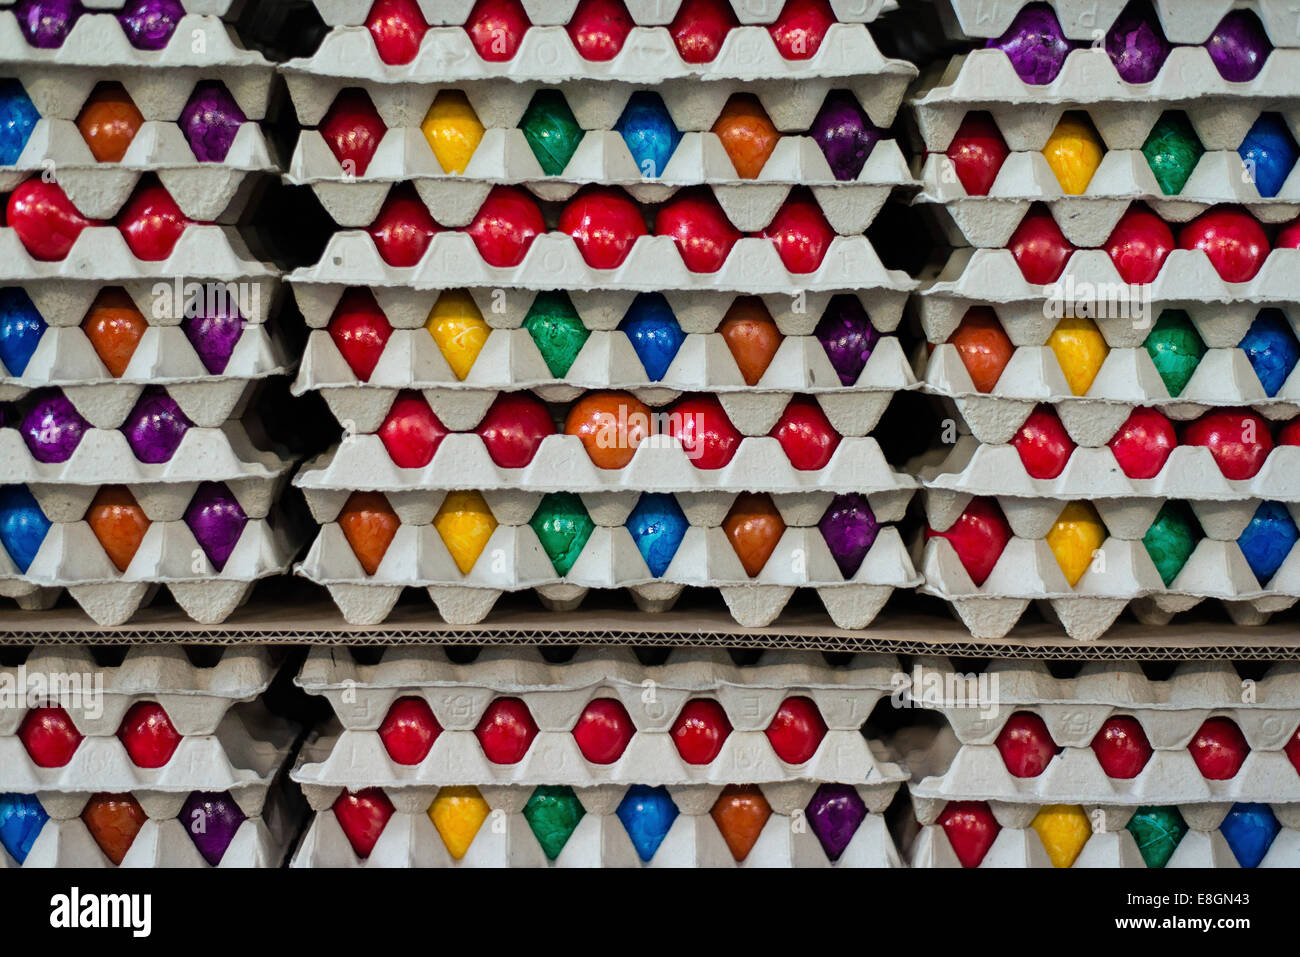 Les oeufs de Pâques colorés empilés dans des boîtes de carton, des oeufs, de l'entreprise de teinture Beham Thannhausen, Bayern, Allemagne Banque D'Images